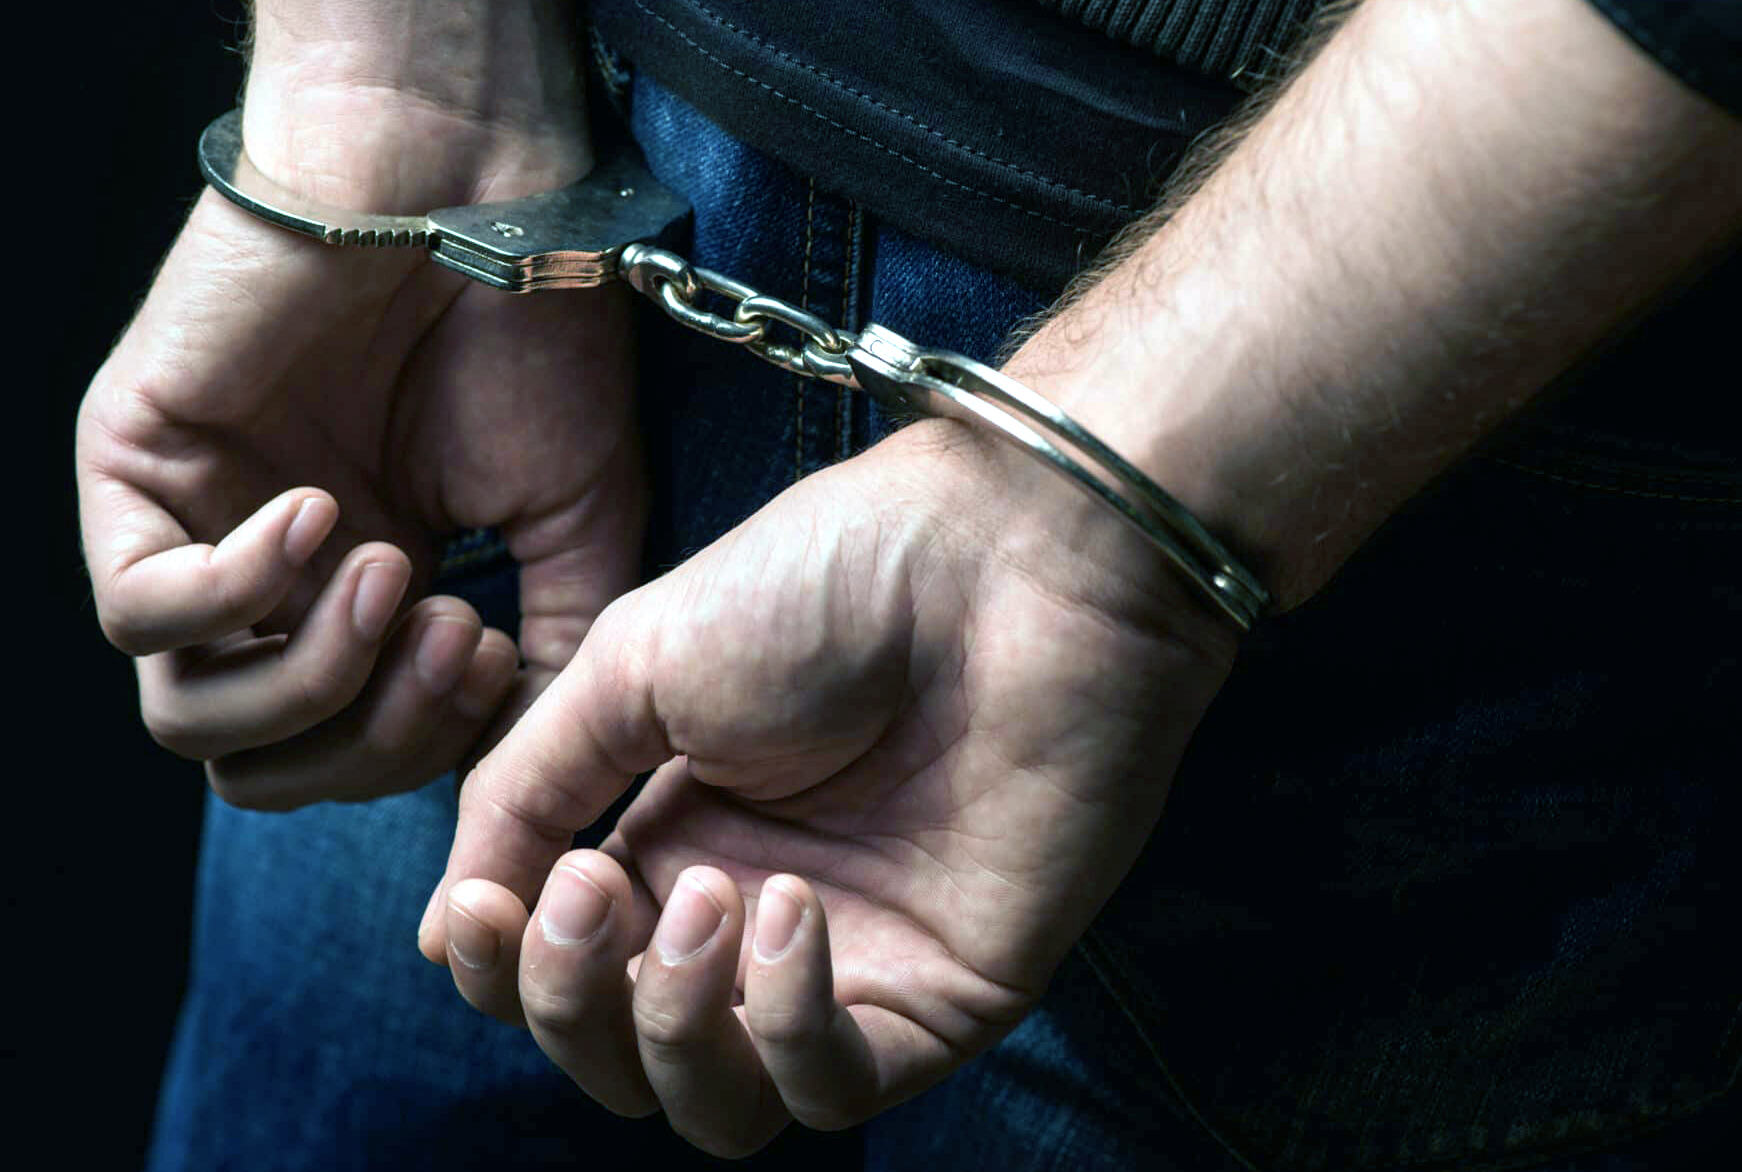 करंट लगने से युवक की मौत के मामले में चार आरोपी गिरफ्तार